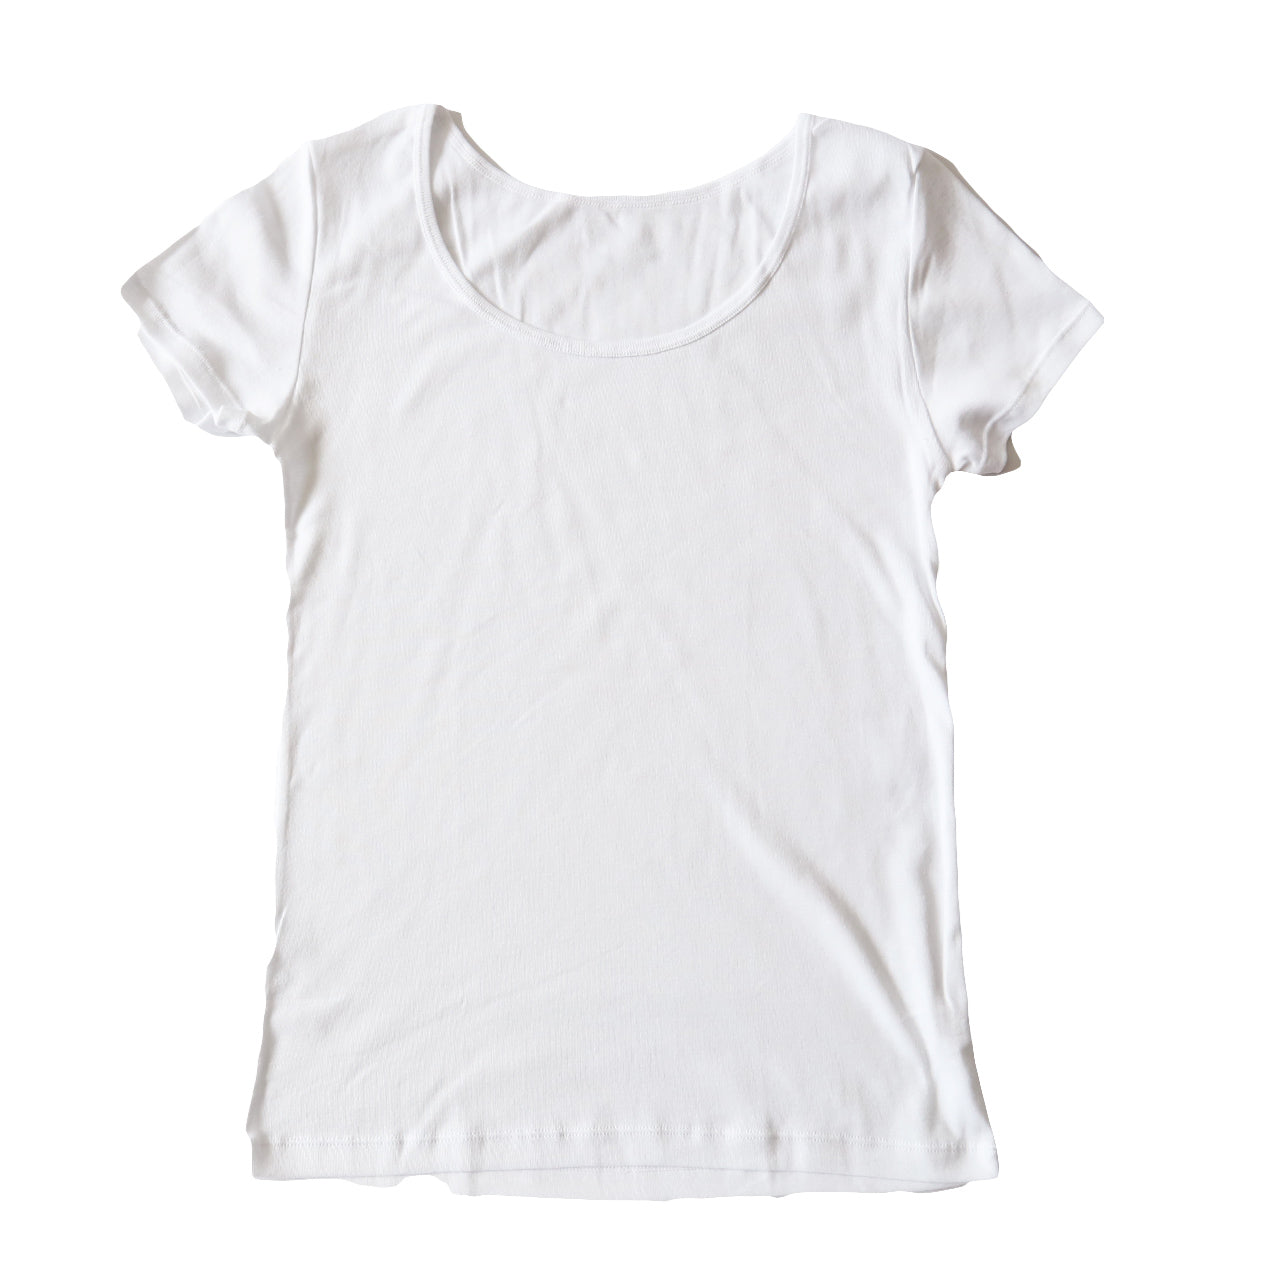 綿100% インナー レディース 半袖 2分袖 tシャツ 大きいサイズ 3L・4L 肌着 綿 シャツ 下着 女性 婦人 コットン 無地 白 グレー 黒 ベージュ シンプル